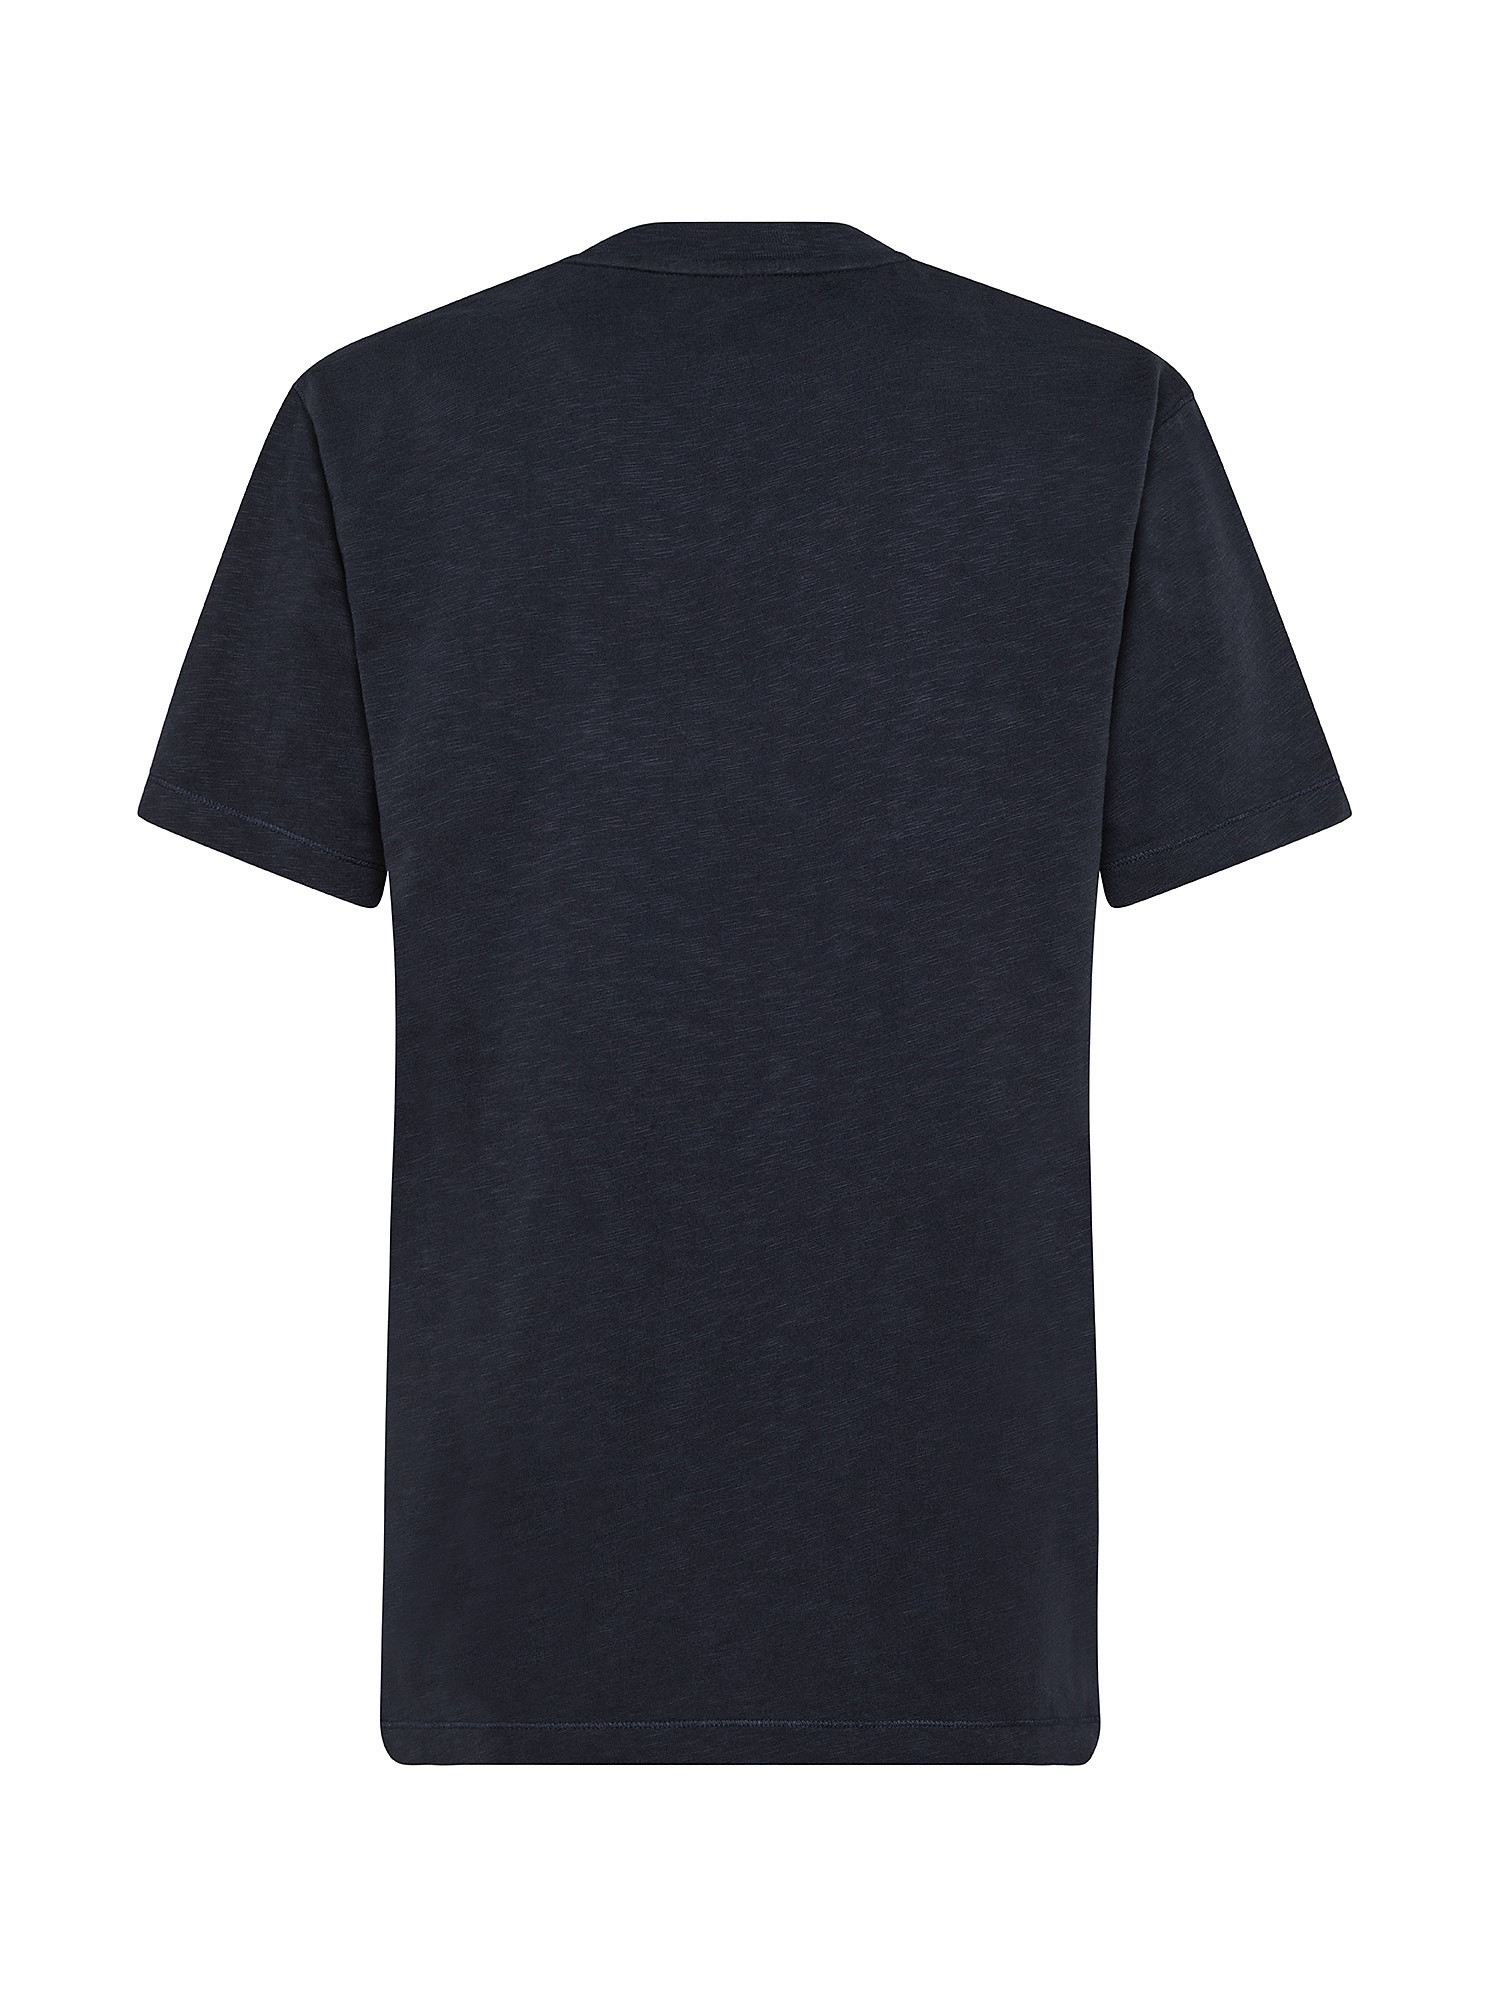 Soft T-Shirt, Dark Blue, large image number 1